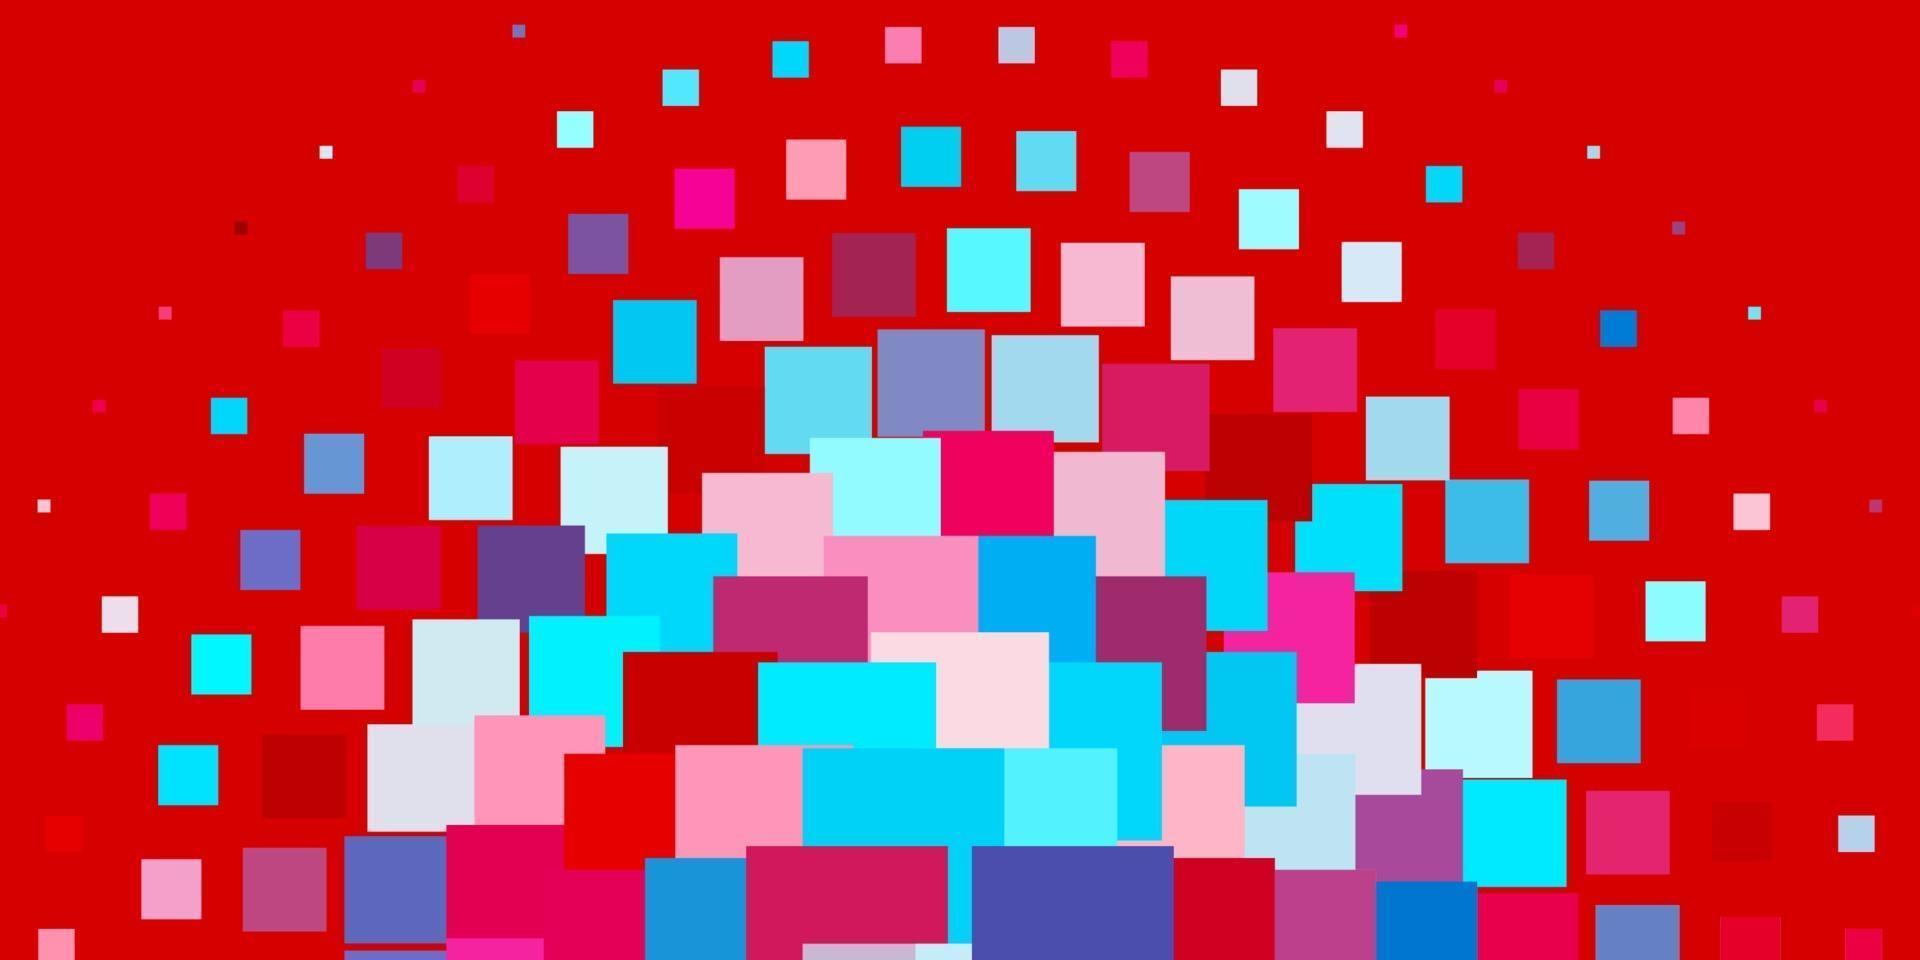 pano de fundo vector azul e vermelho claro com retângulos.